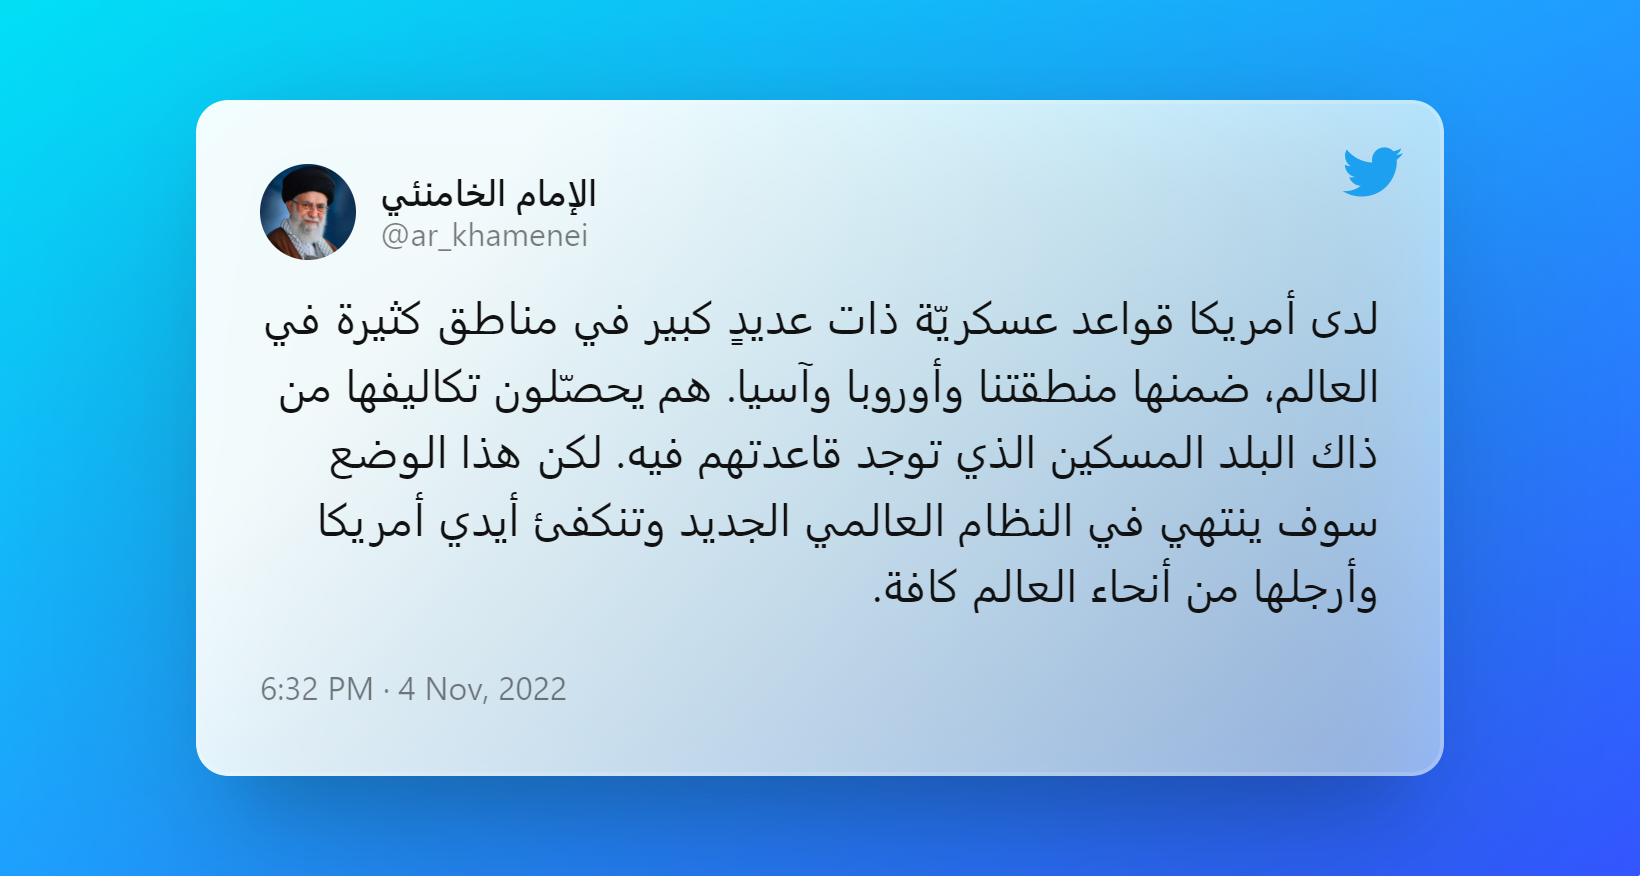 الإمام الخامنئي تويتر (2)